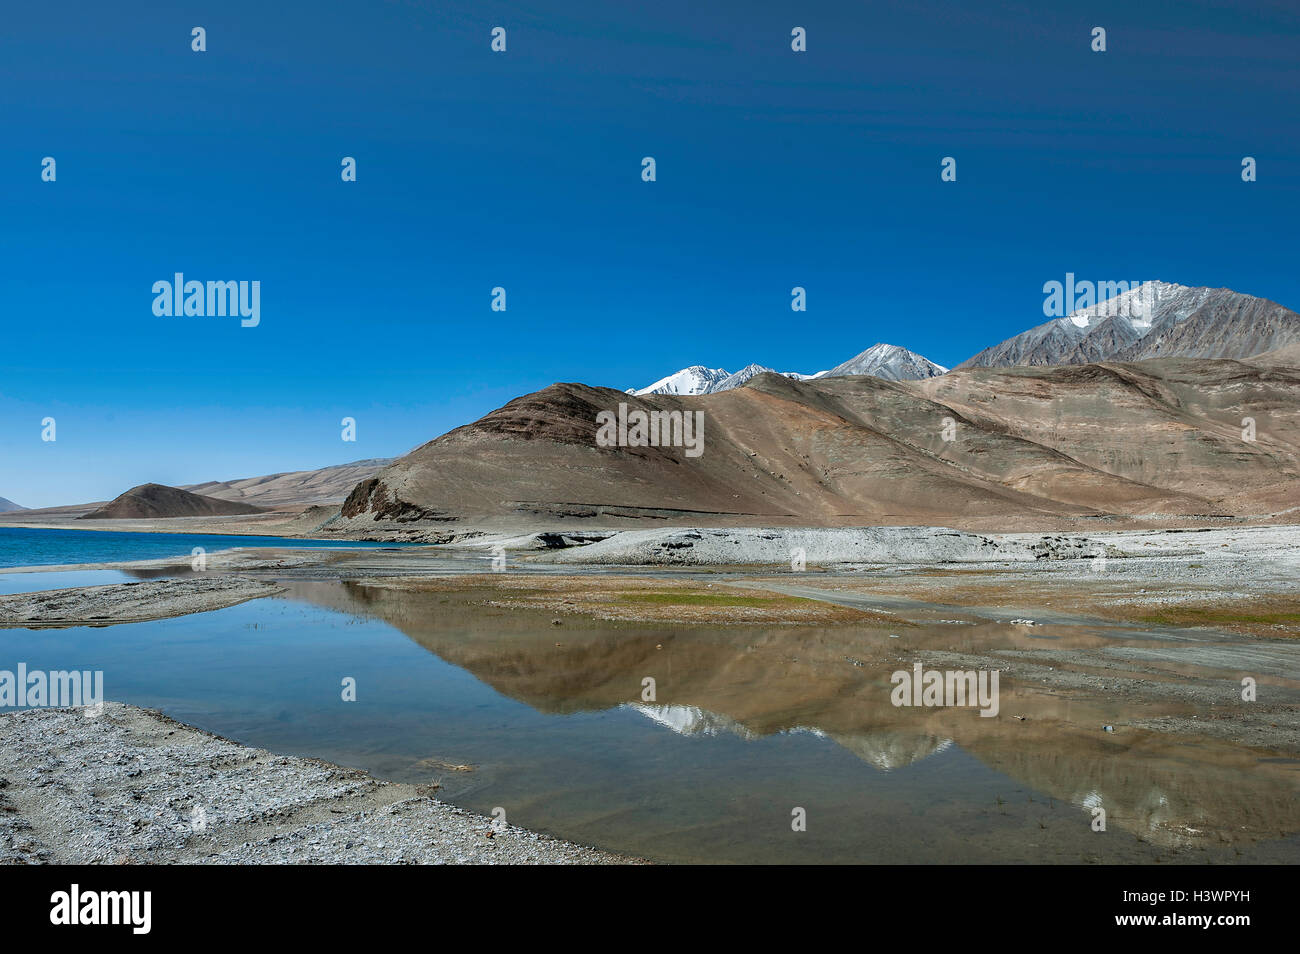 Mountain reflections in Pangong Tso, Ladakh, India Stock Photo